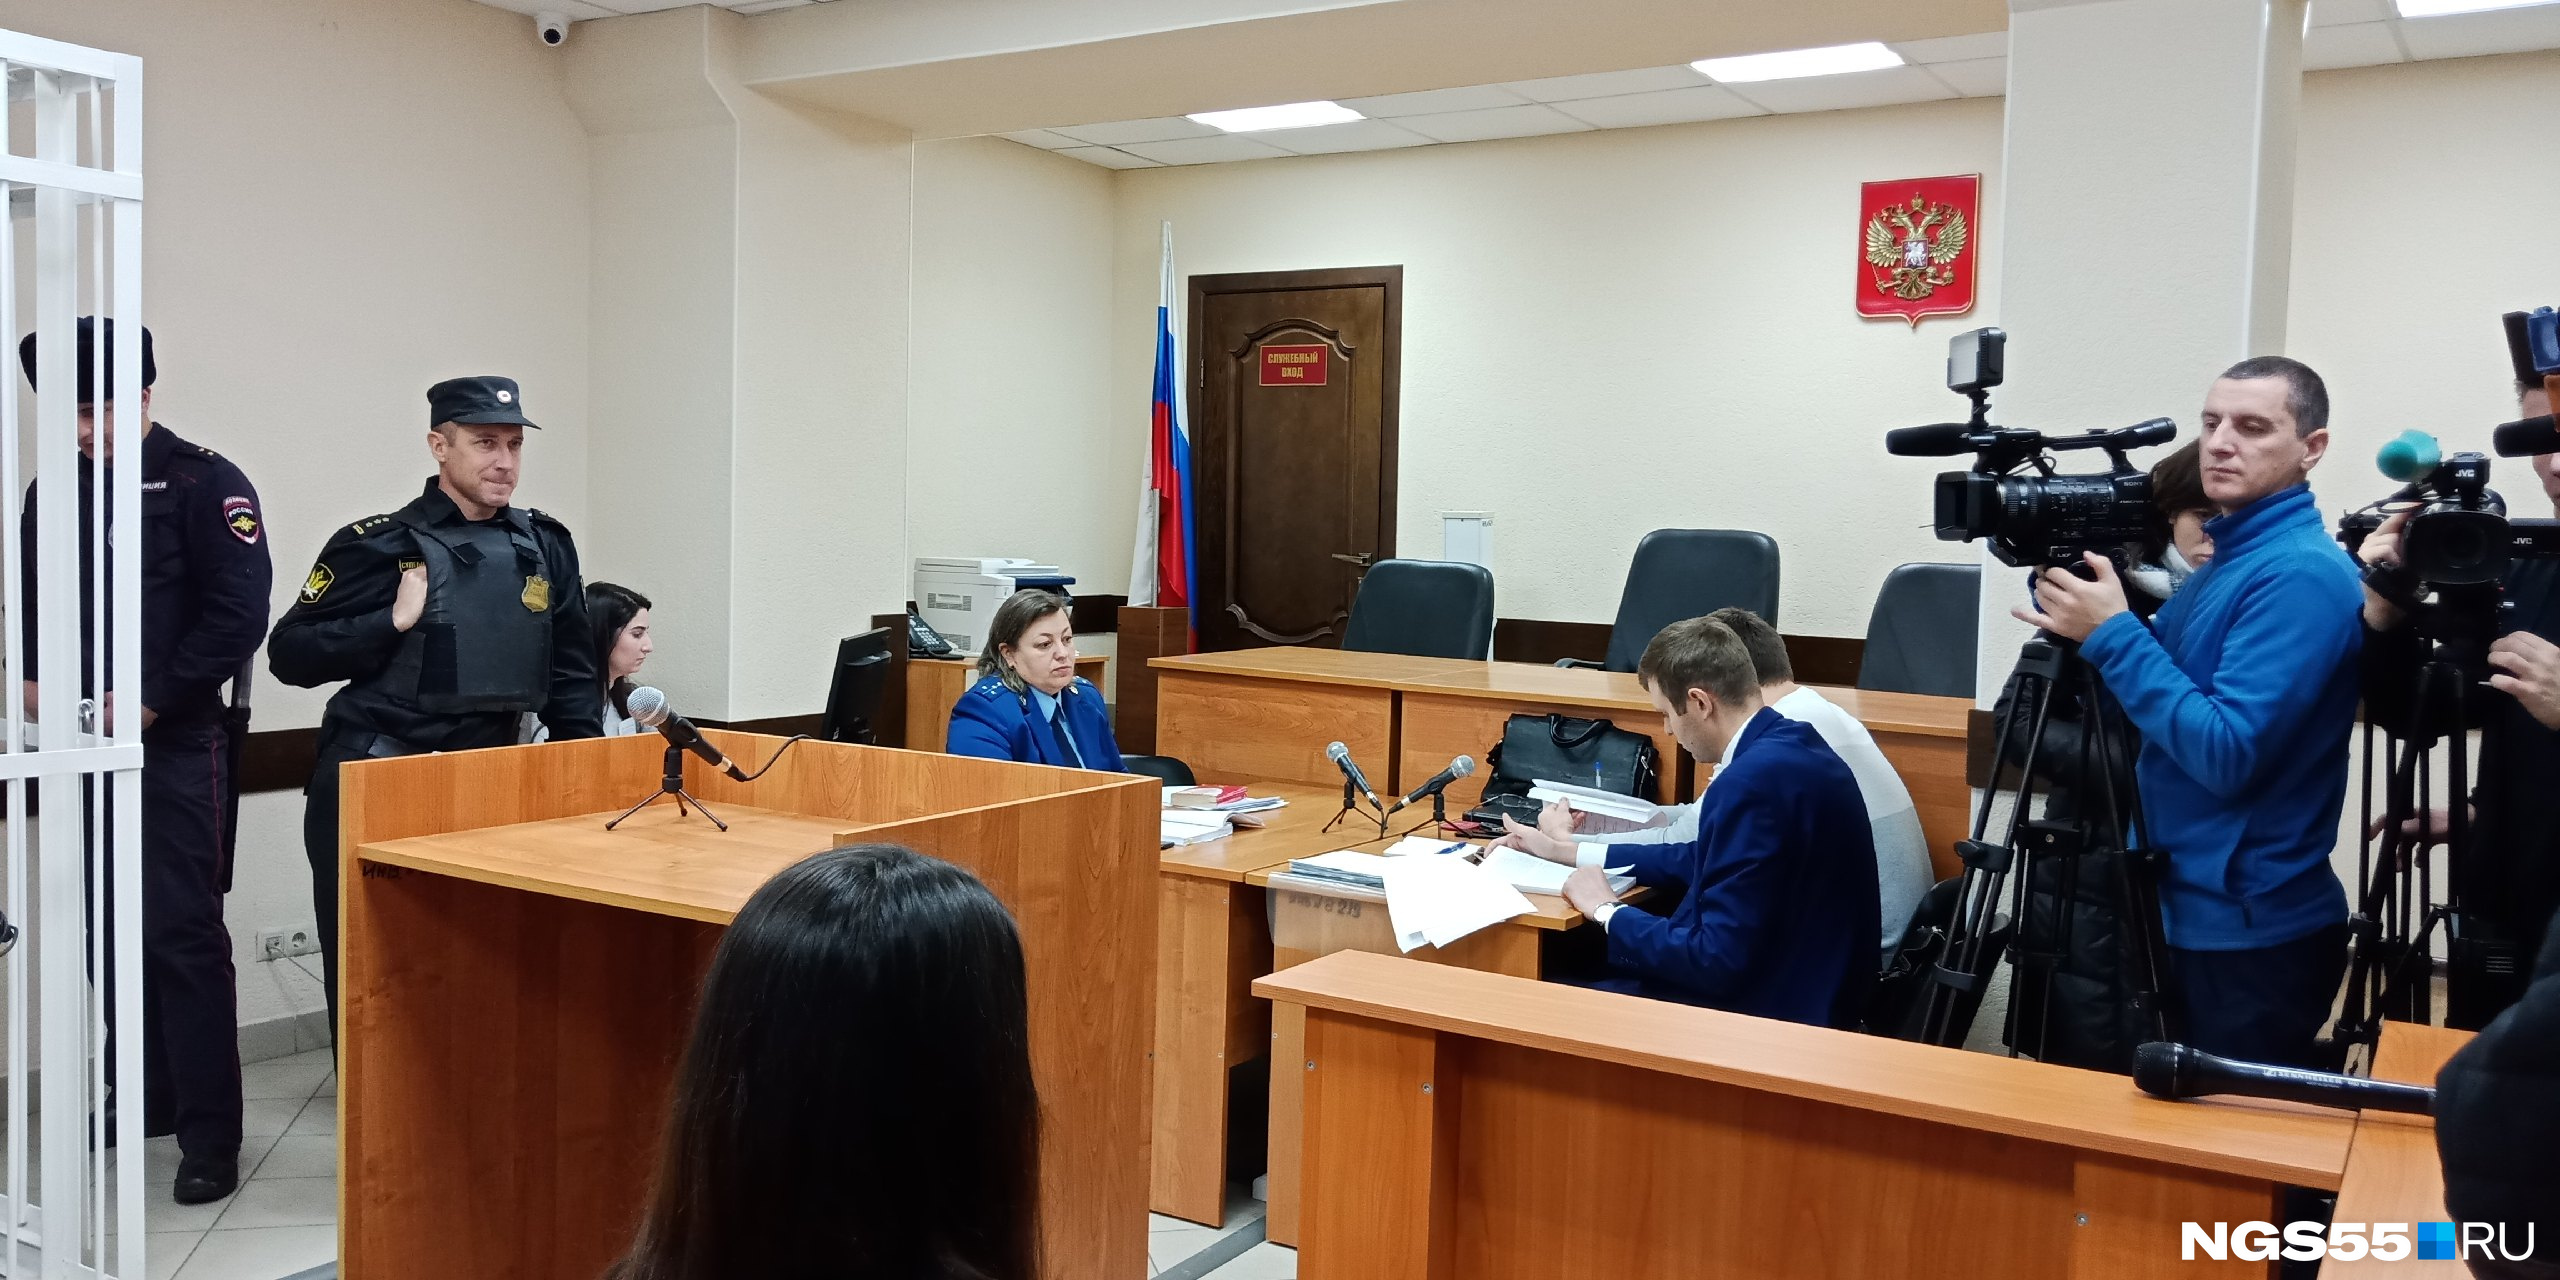 Адвокаты Юмашевой и Казакова хотели, чтобы мальчика допросили в суде, но психологическая экспертиза показала, что этого лучше не делать